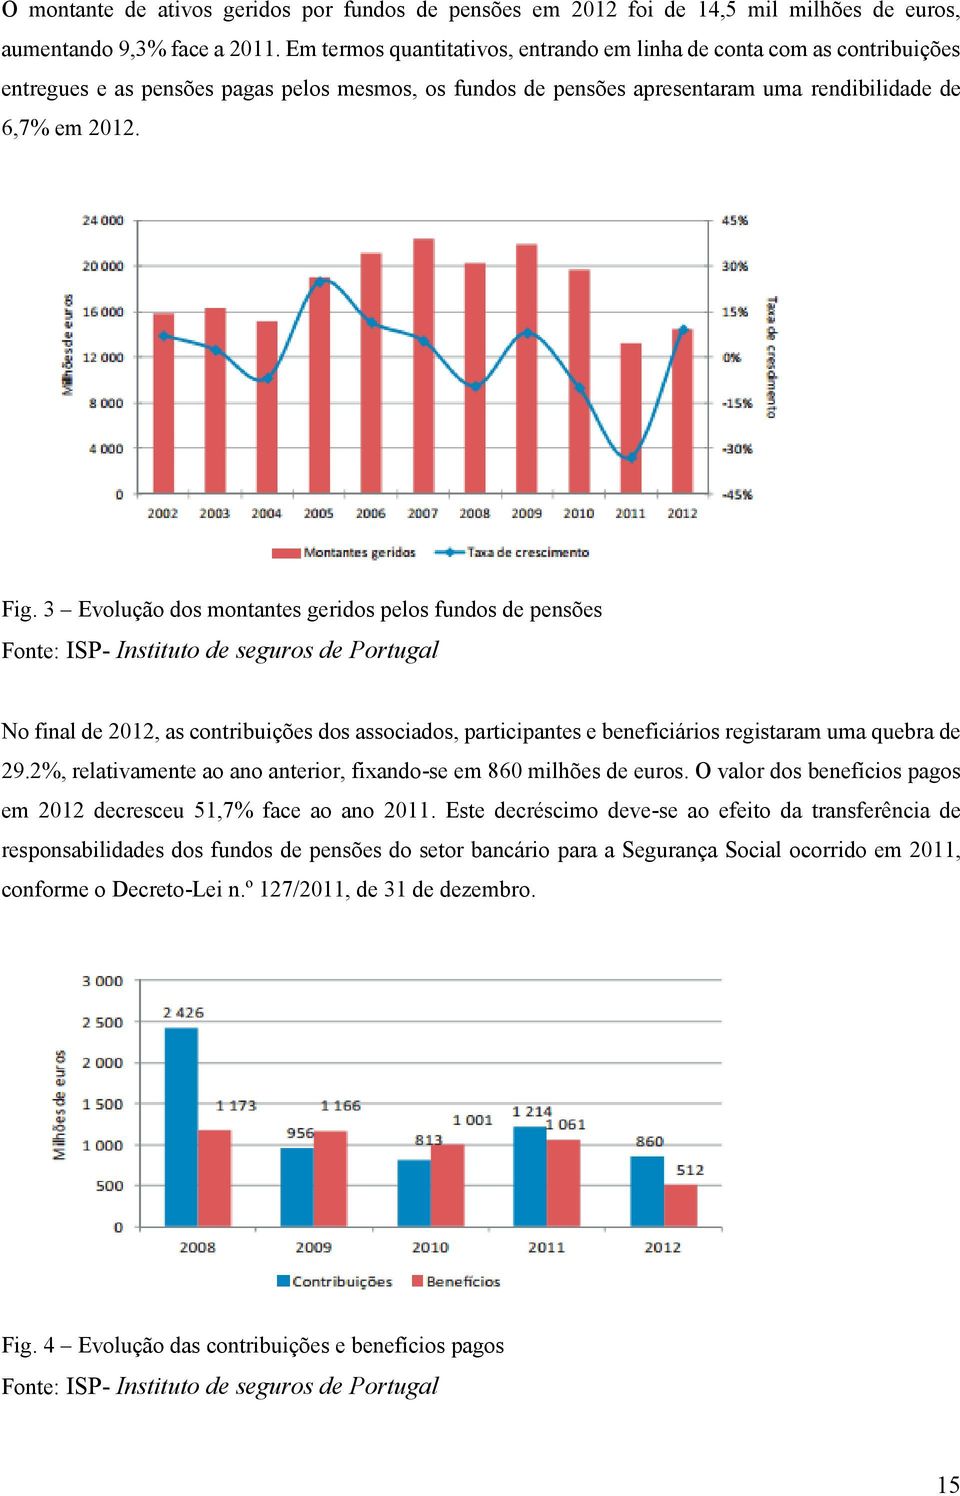 3 Evolução dos montantes gerdos pelos fundos de pensões Fonte: ISP- Insttuto de seguros de Portugal No fnal de 2012, as contrbuções dos assocados, partcpantes e benefcáros regstaram uma quebra de 29.